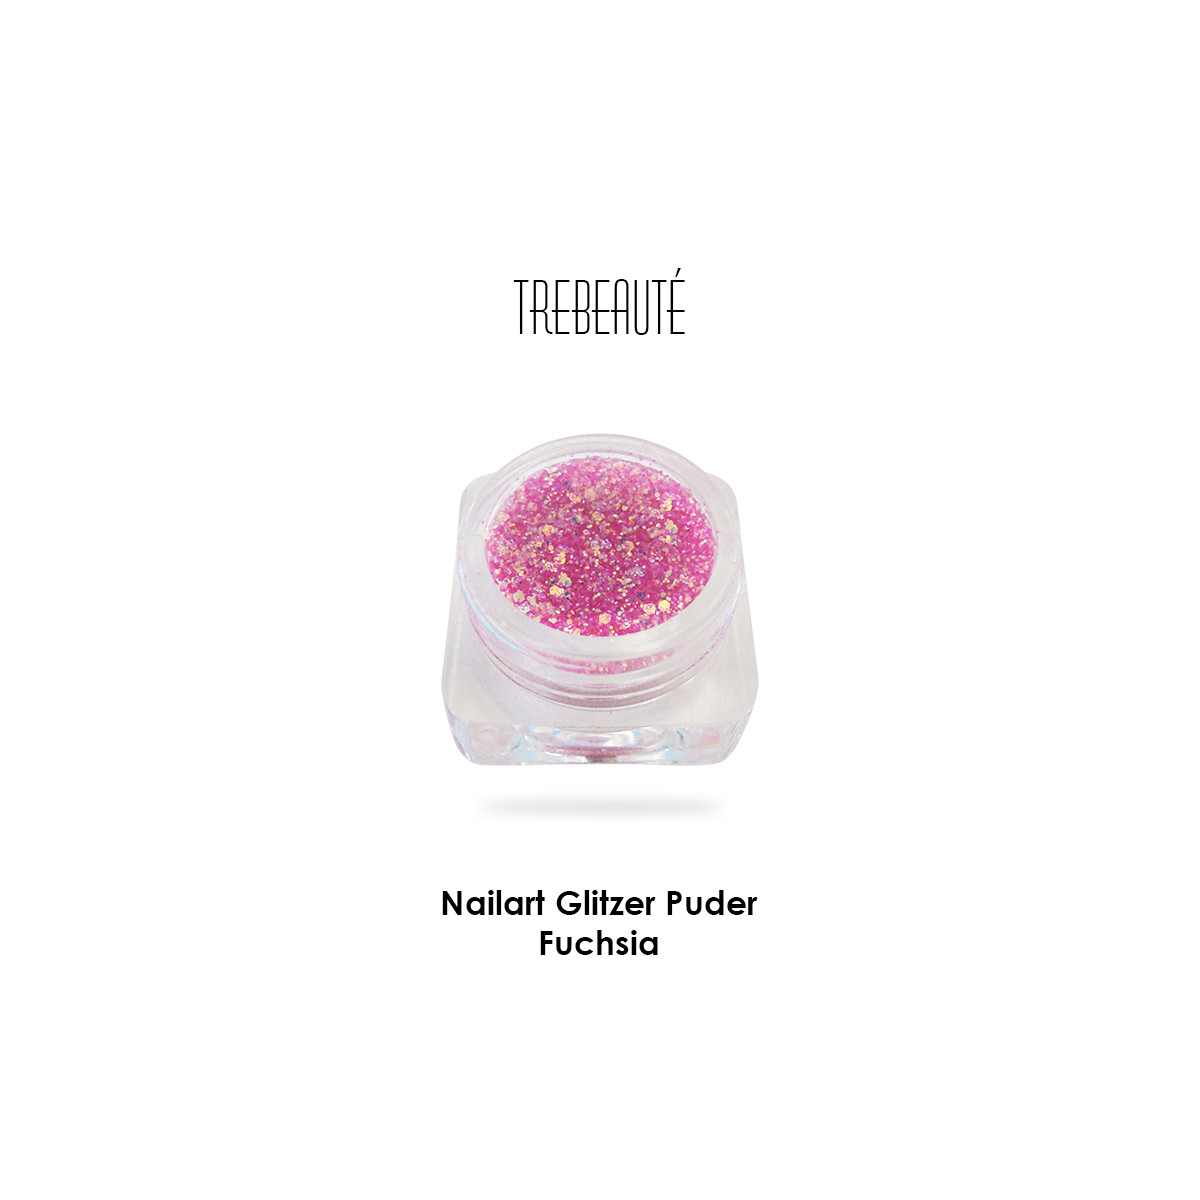 Nailart Glitzer Puder & Glitterstaub, Fuchsia